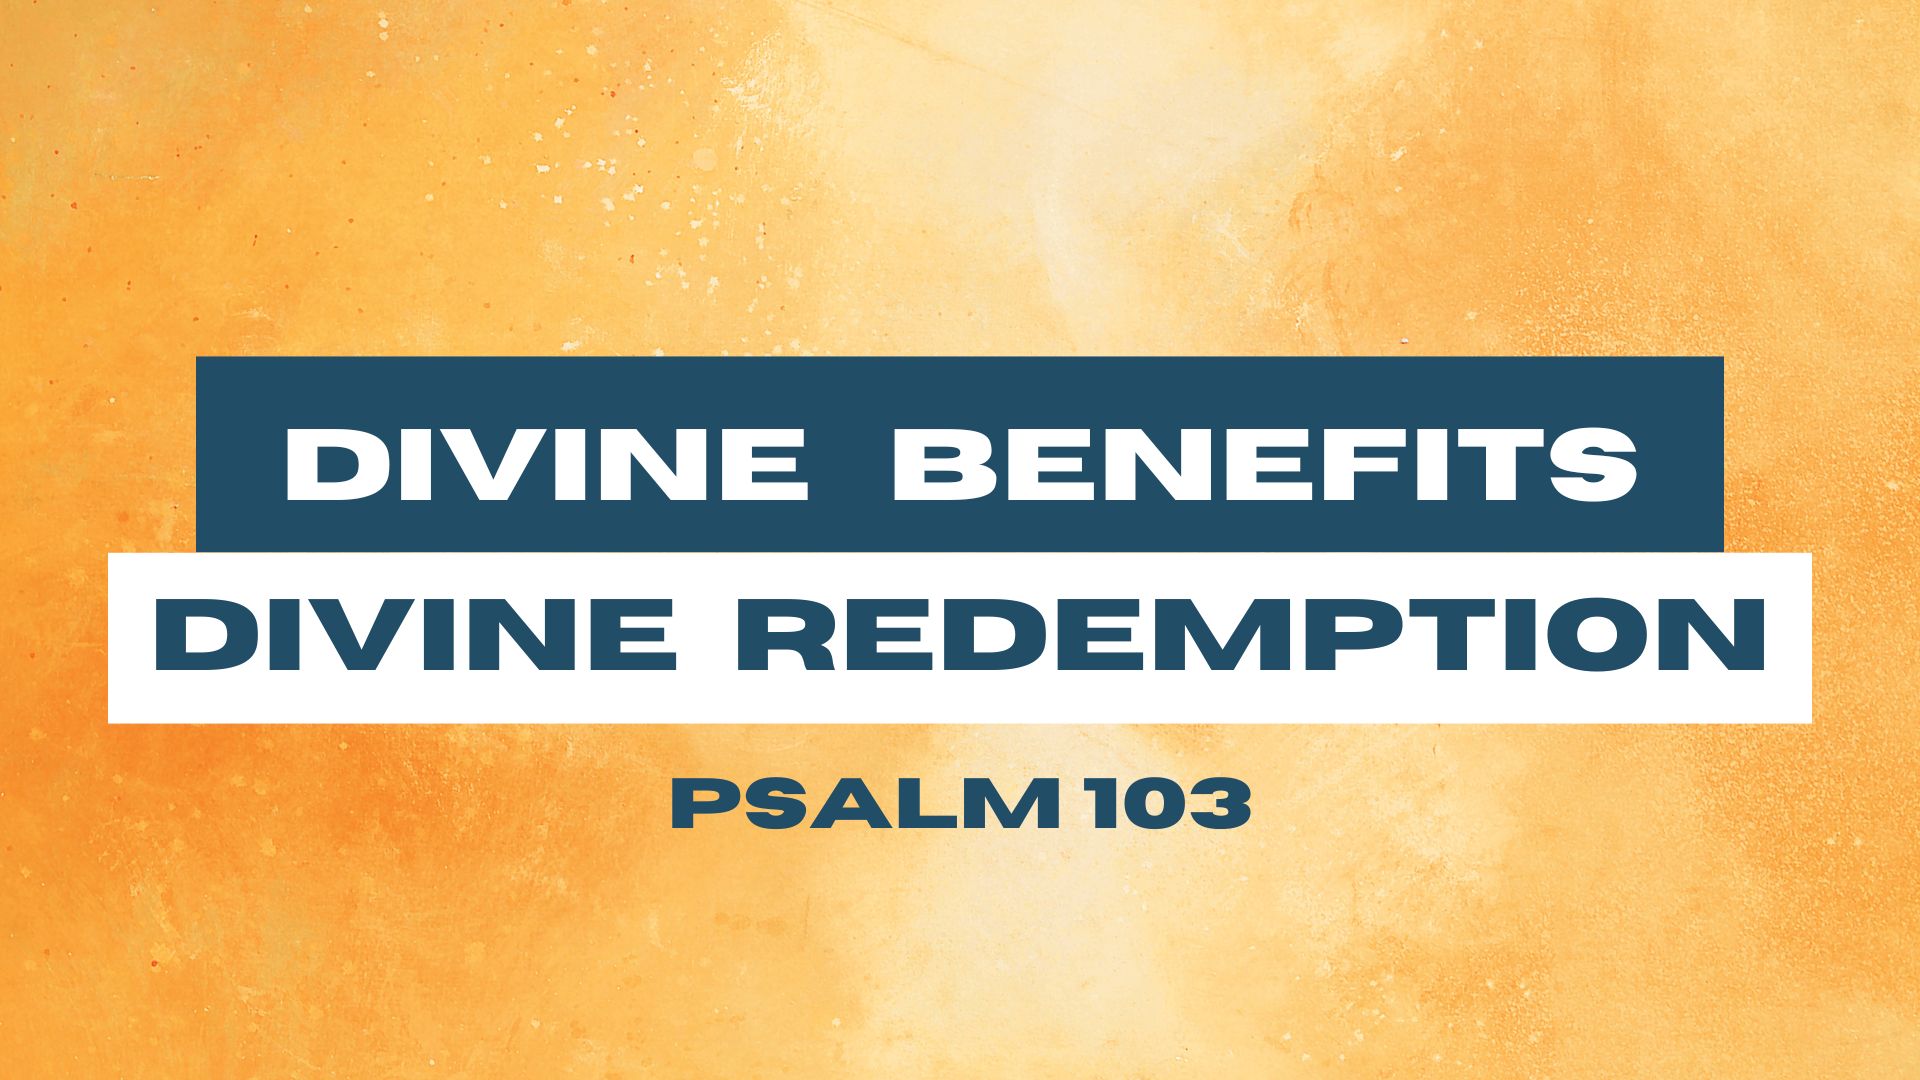 Divine Benefits - Divine Redemption